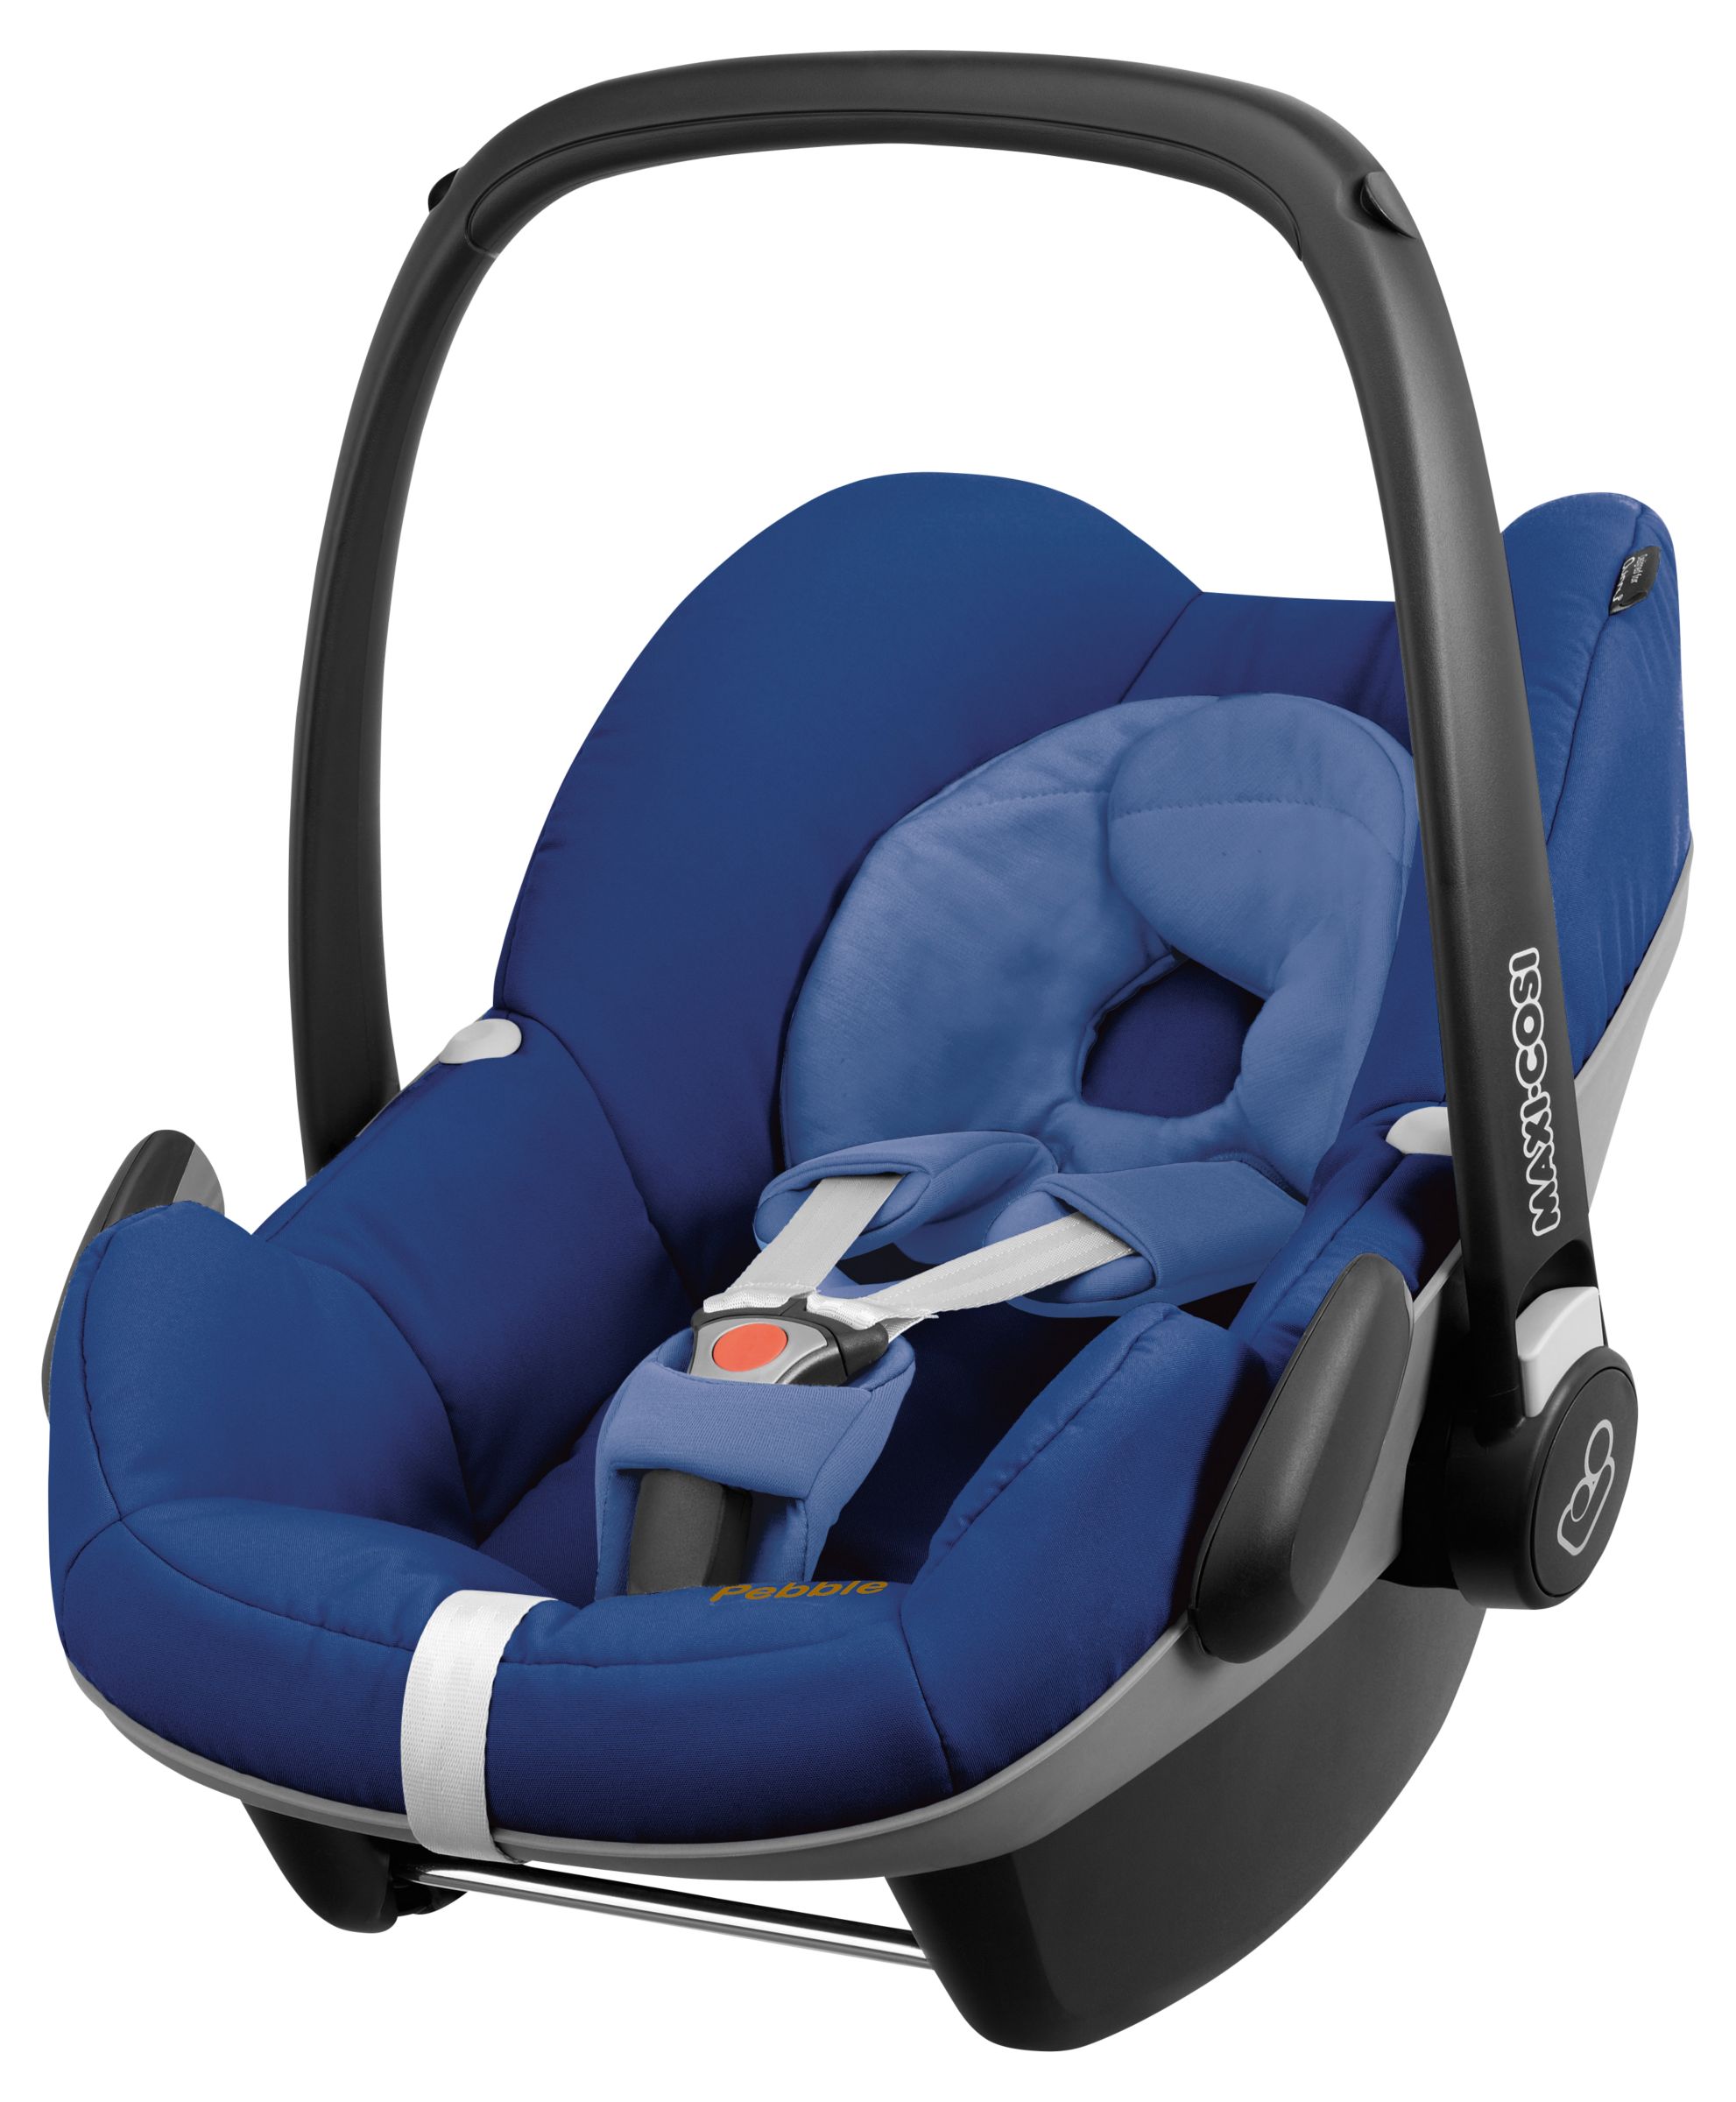 Maxi-Cosi Pebble Group 0+ Baby Car Seat, Blue Base at John ...